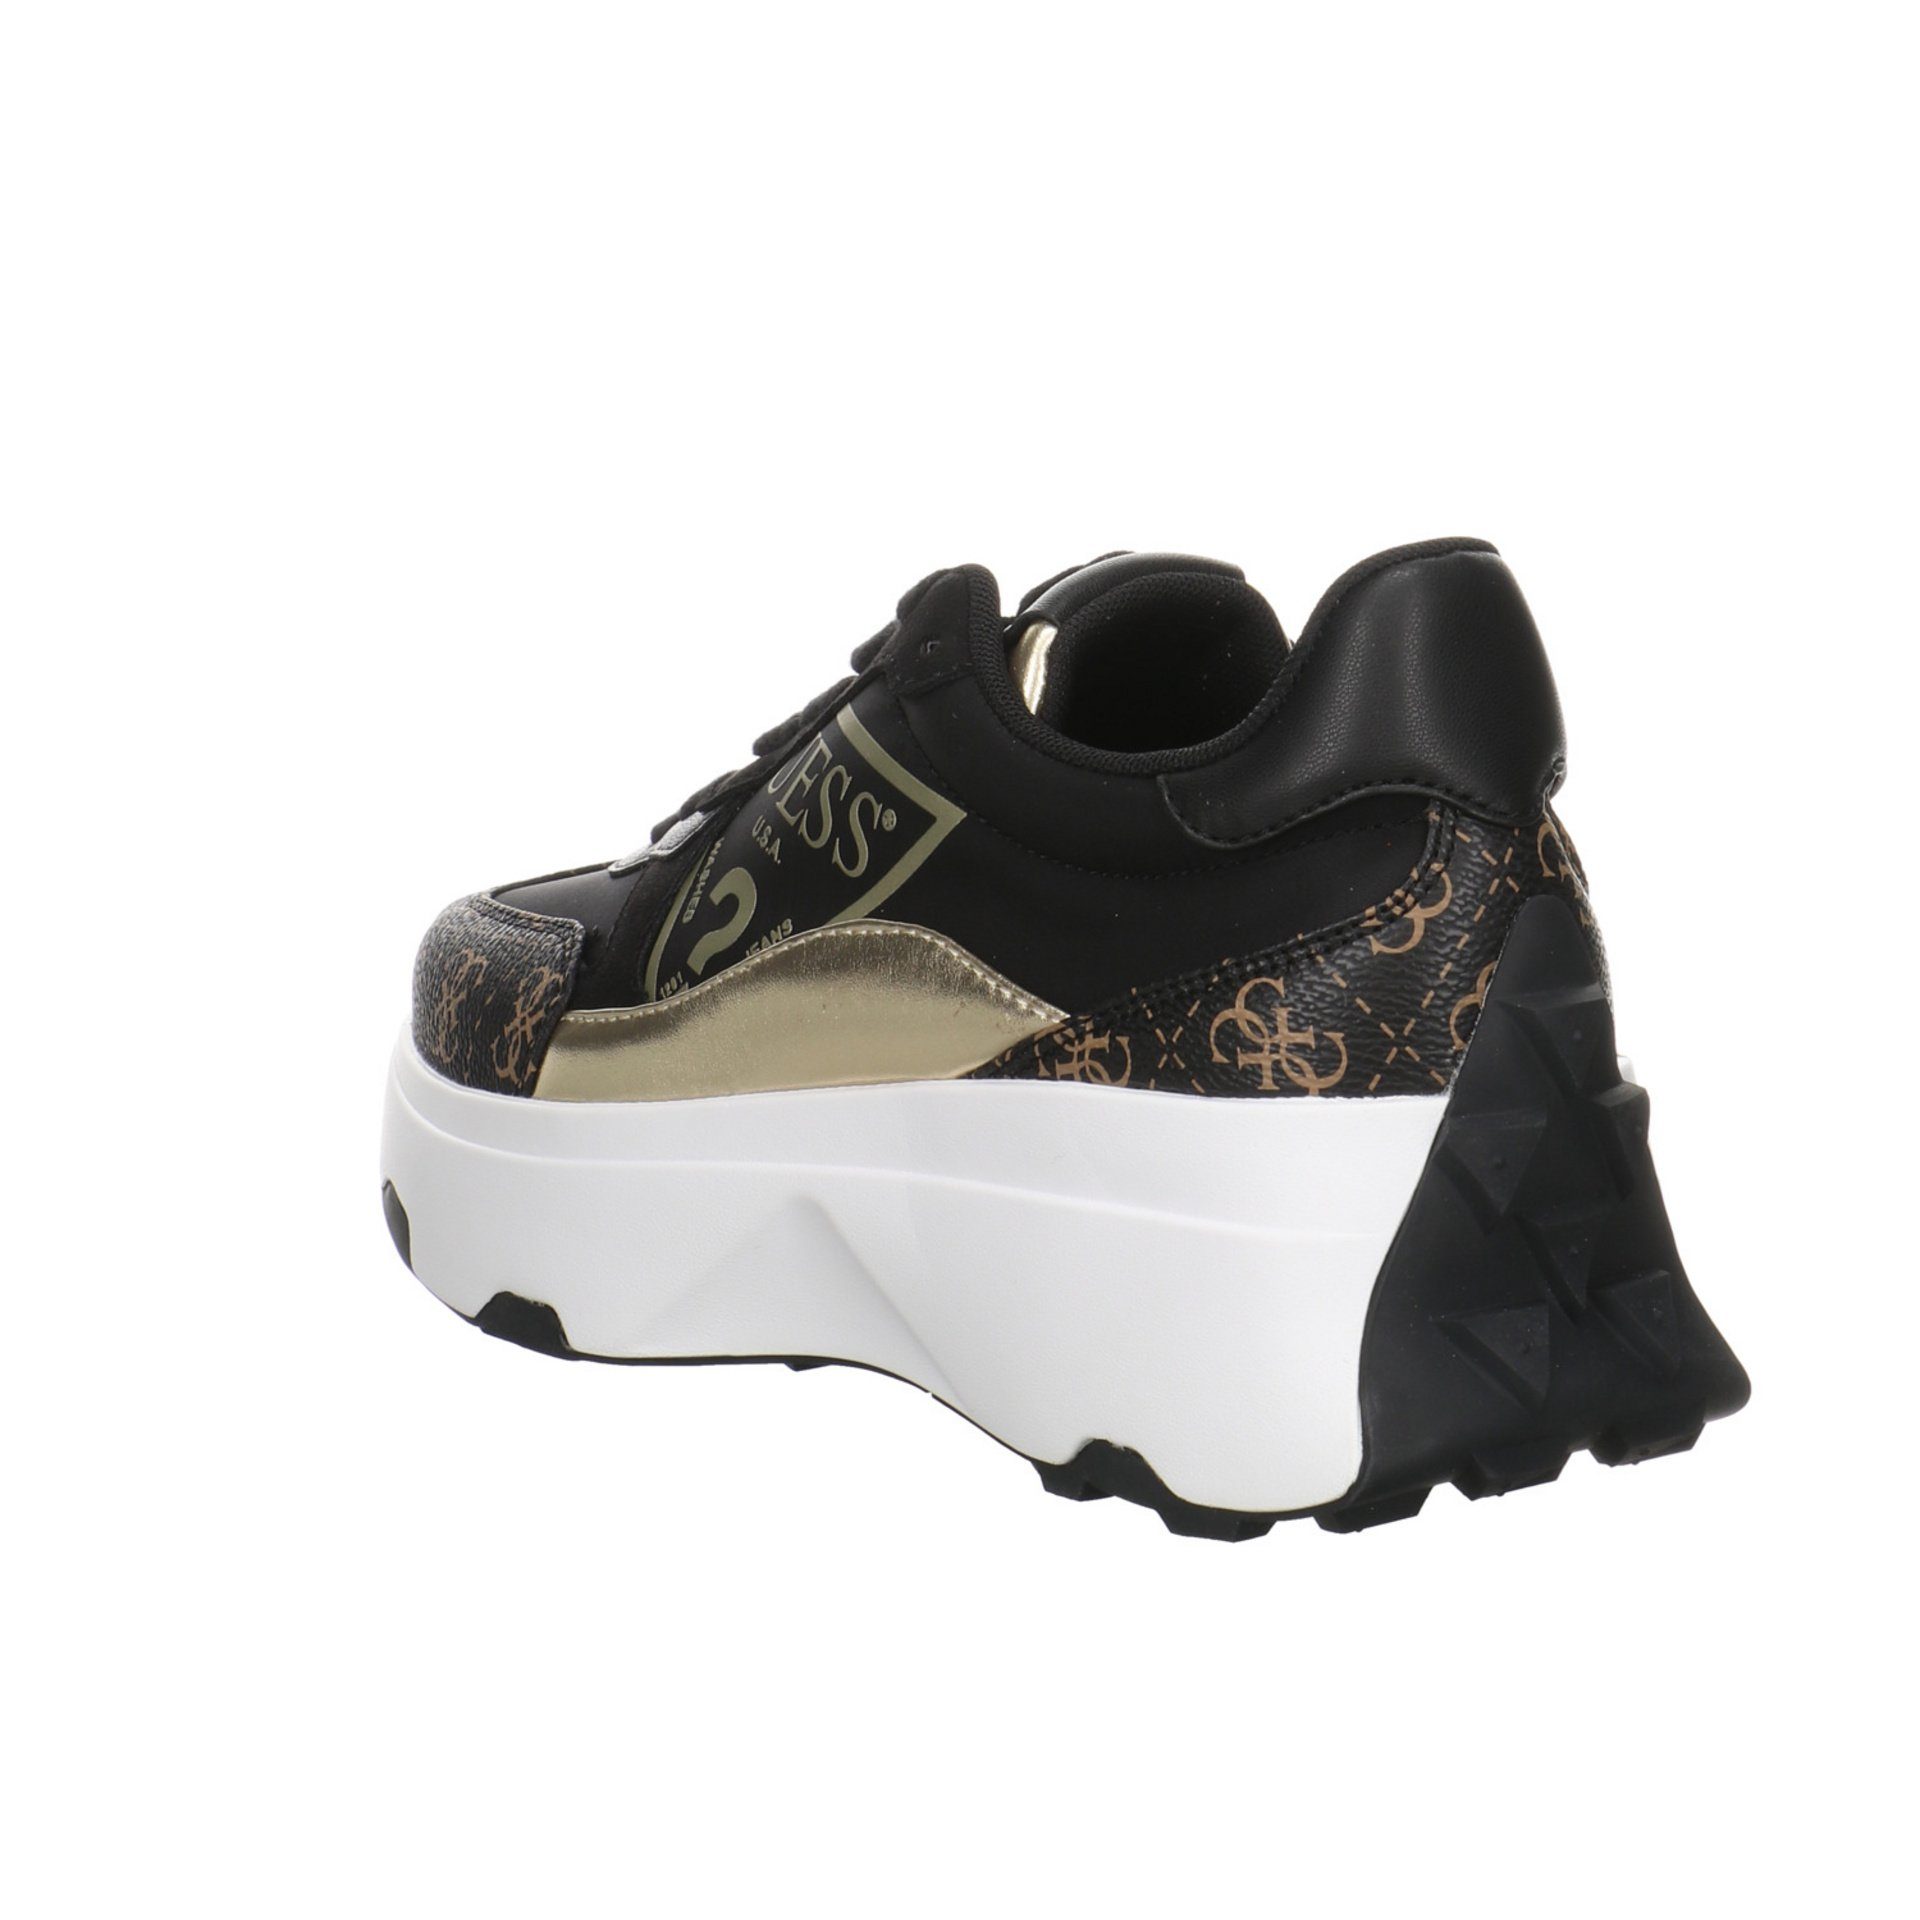 Sneaker black/brown/ocra Calebb Damen Runner Schuhe Guess Synthetikkombination Schnürschuh Sneaker